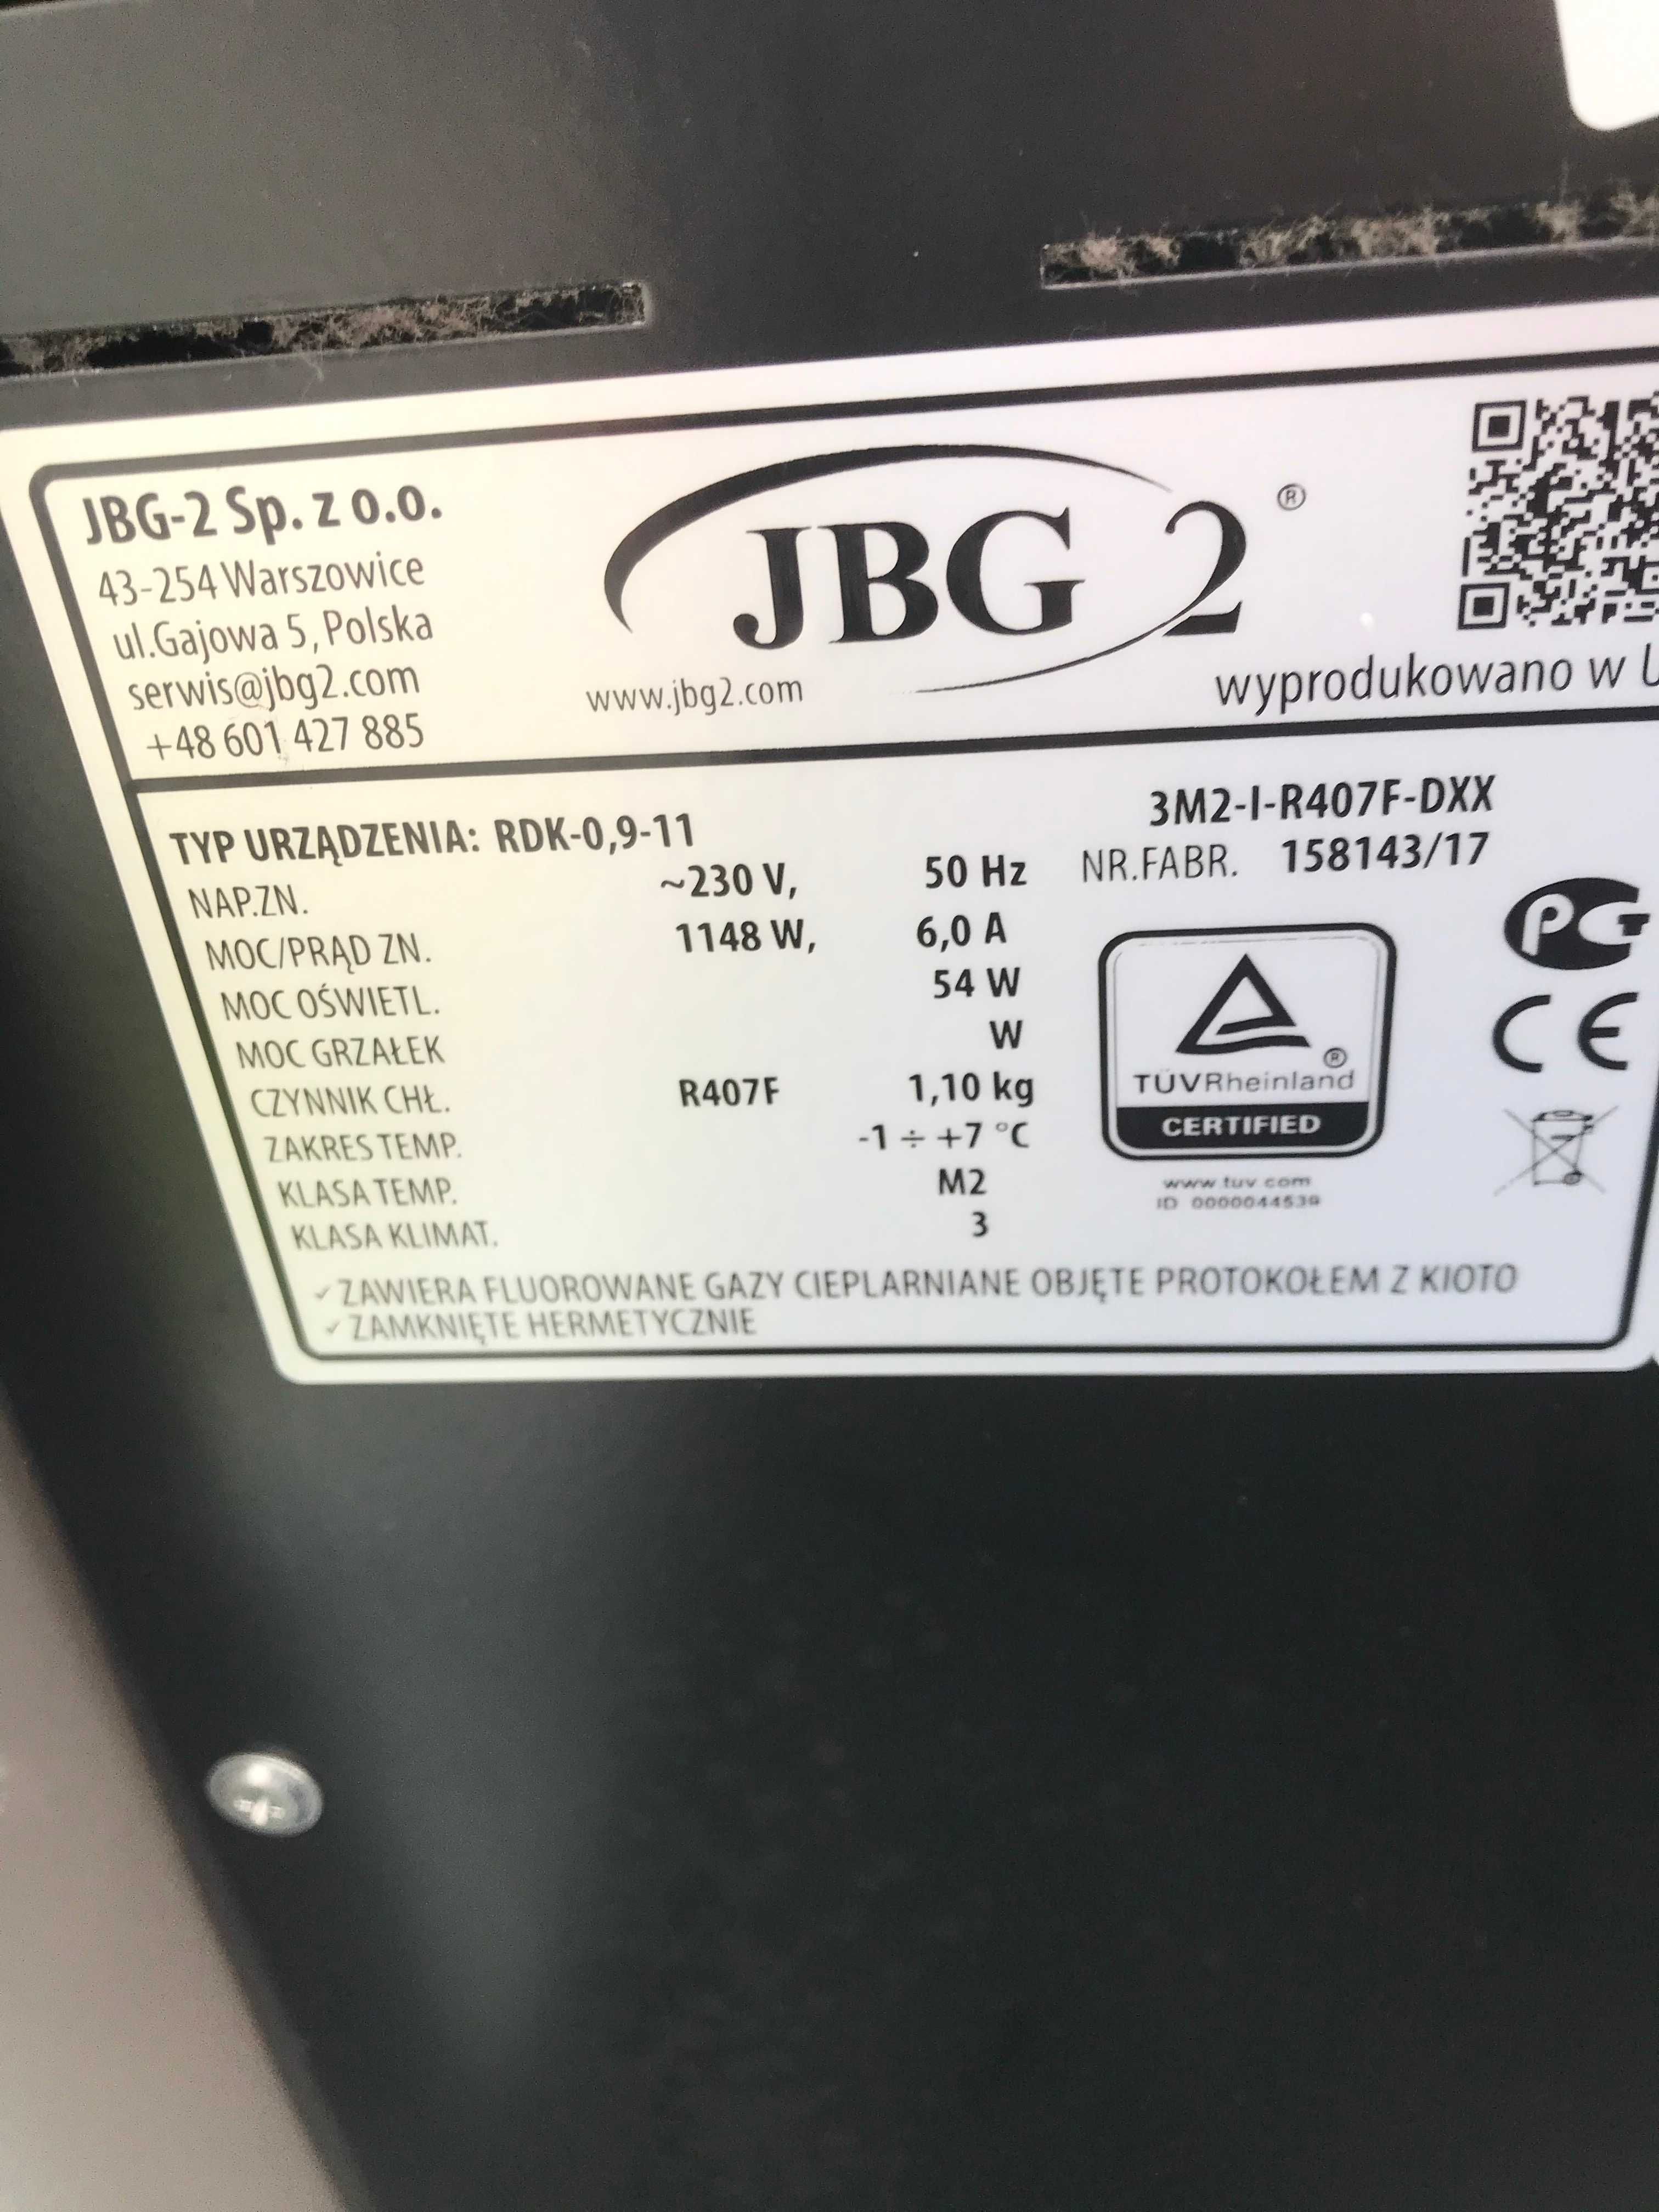 Regał chłodniczy JBG2 dł. 1 m, 2017 r. Z AGREGATEM i inne urządzenia.